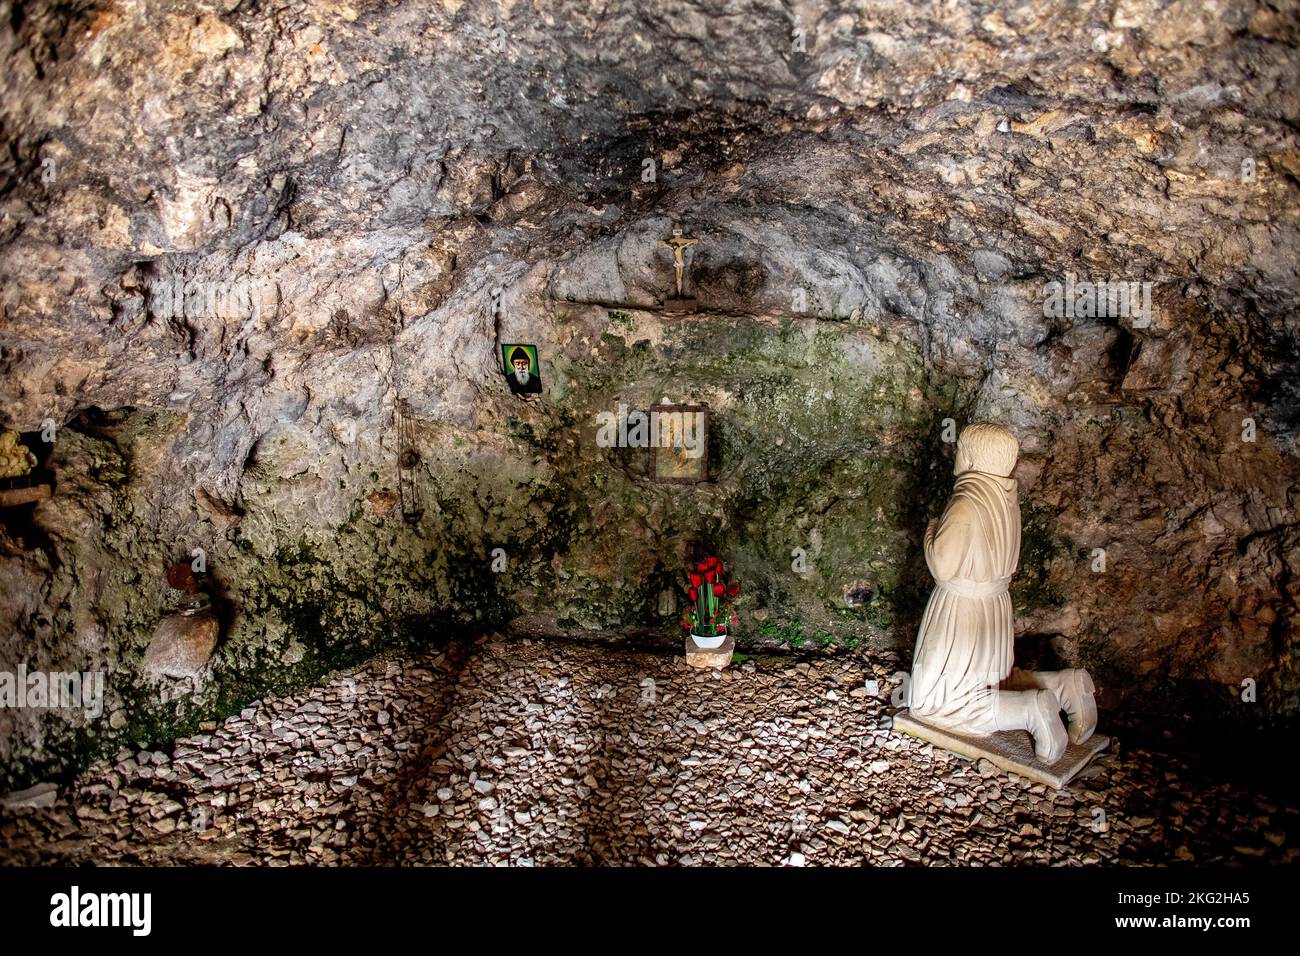 La grotta dove Saint charbel trascorse 18 anni a pregare e meditare prima di entrar nel monastero di Bekaa Kafra, il suo villaggio natale in Libano Foto Stock